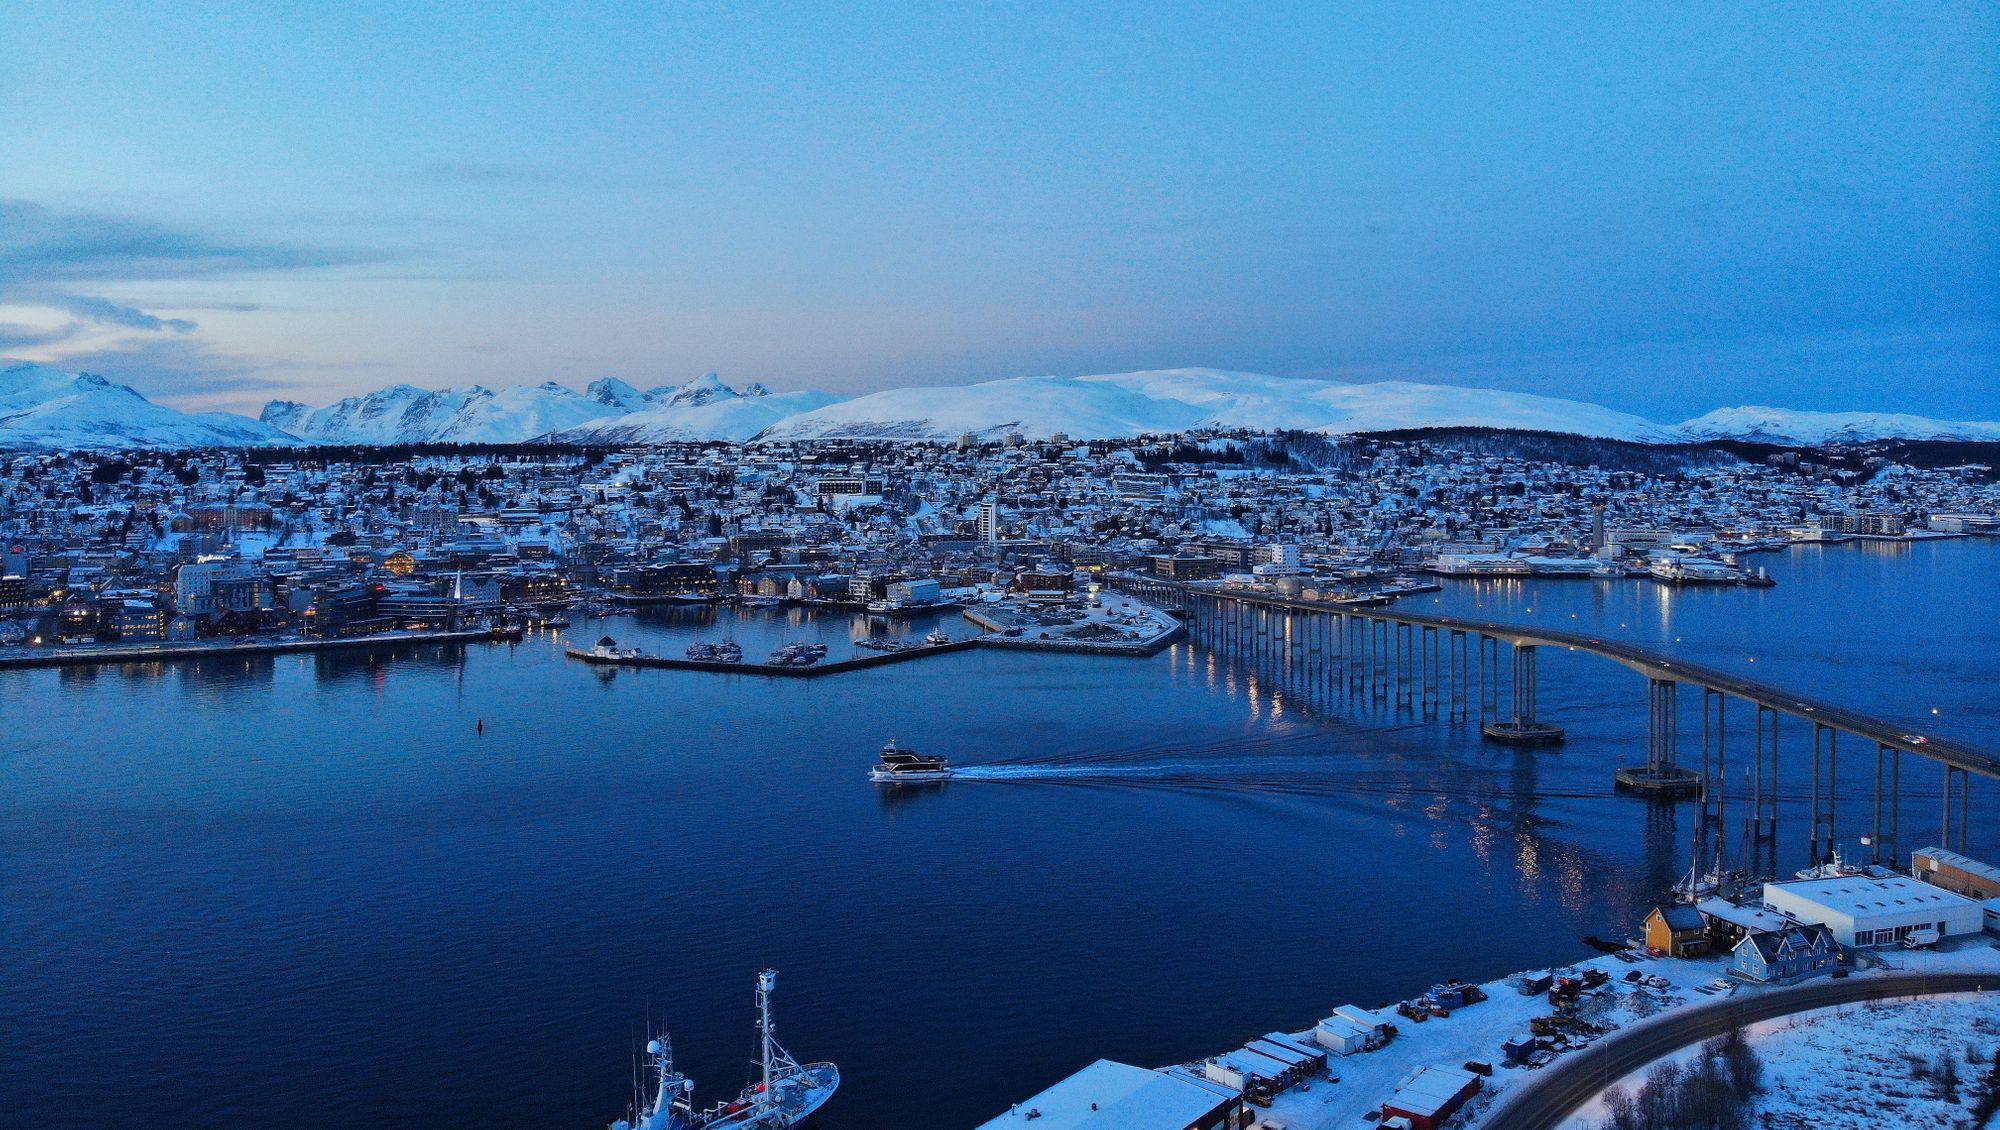 Image of Tromso city, Norway